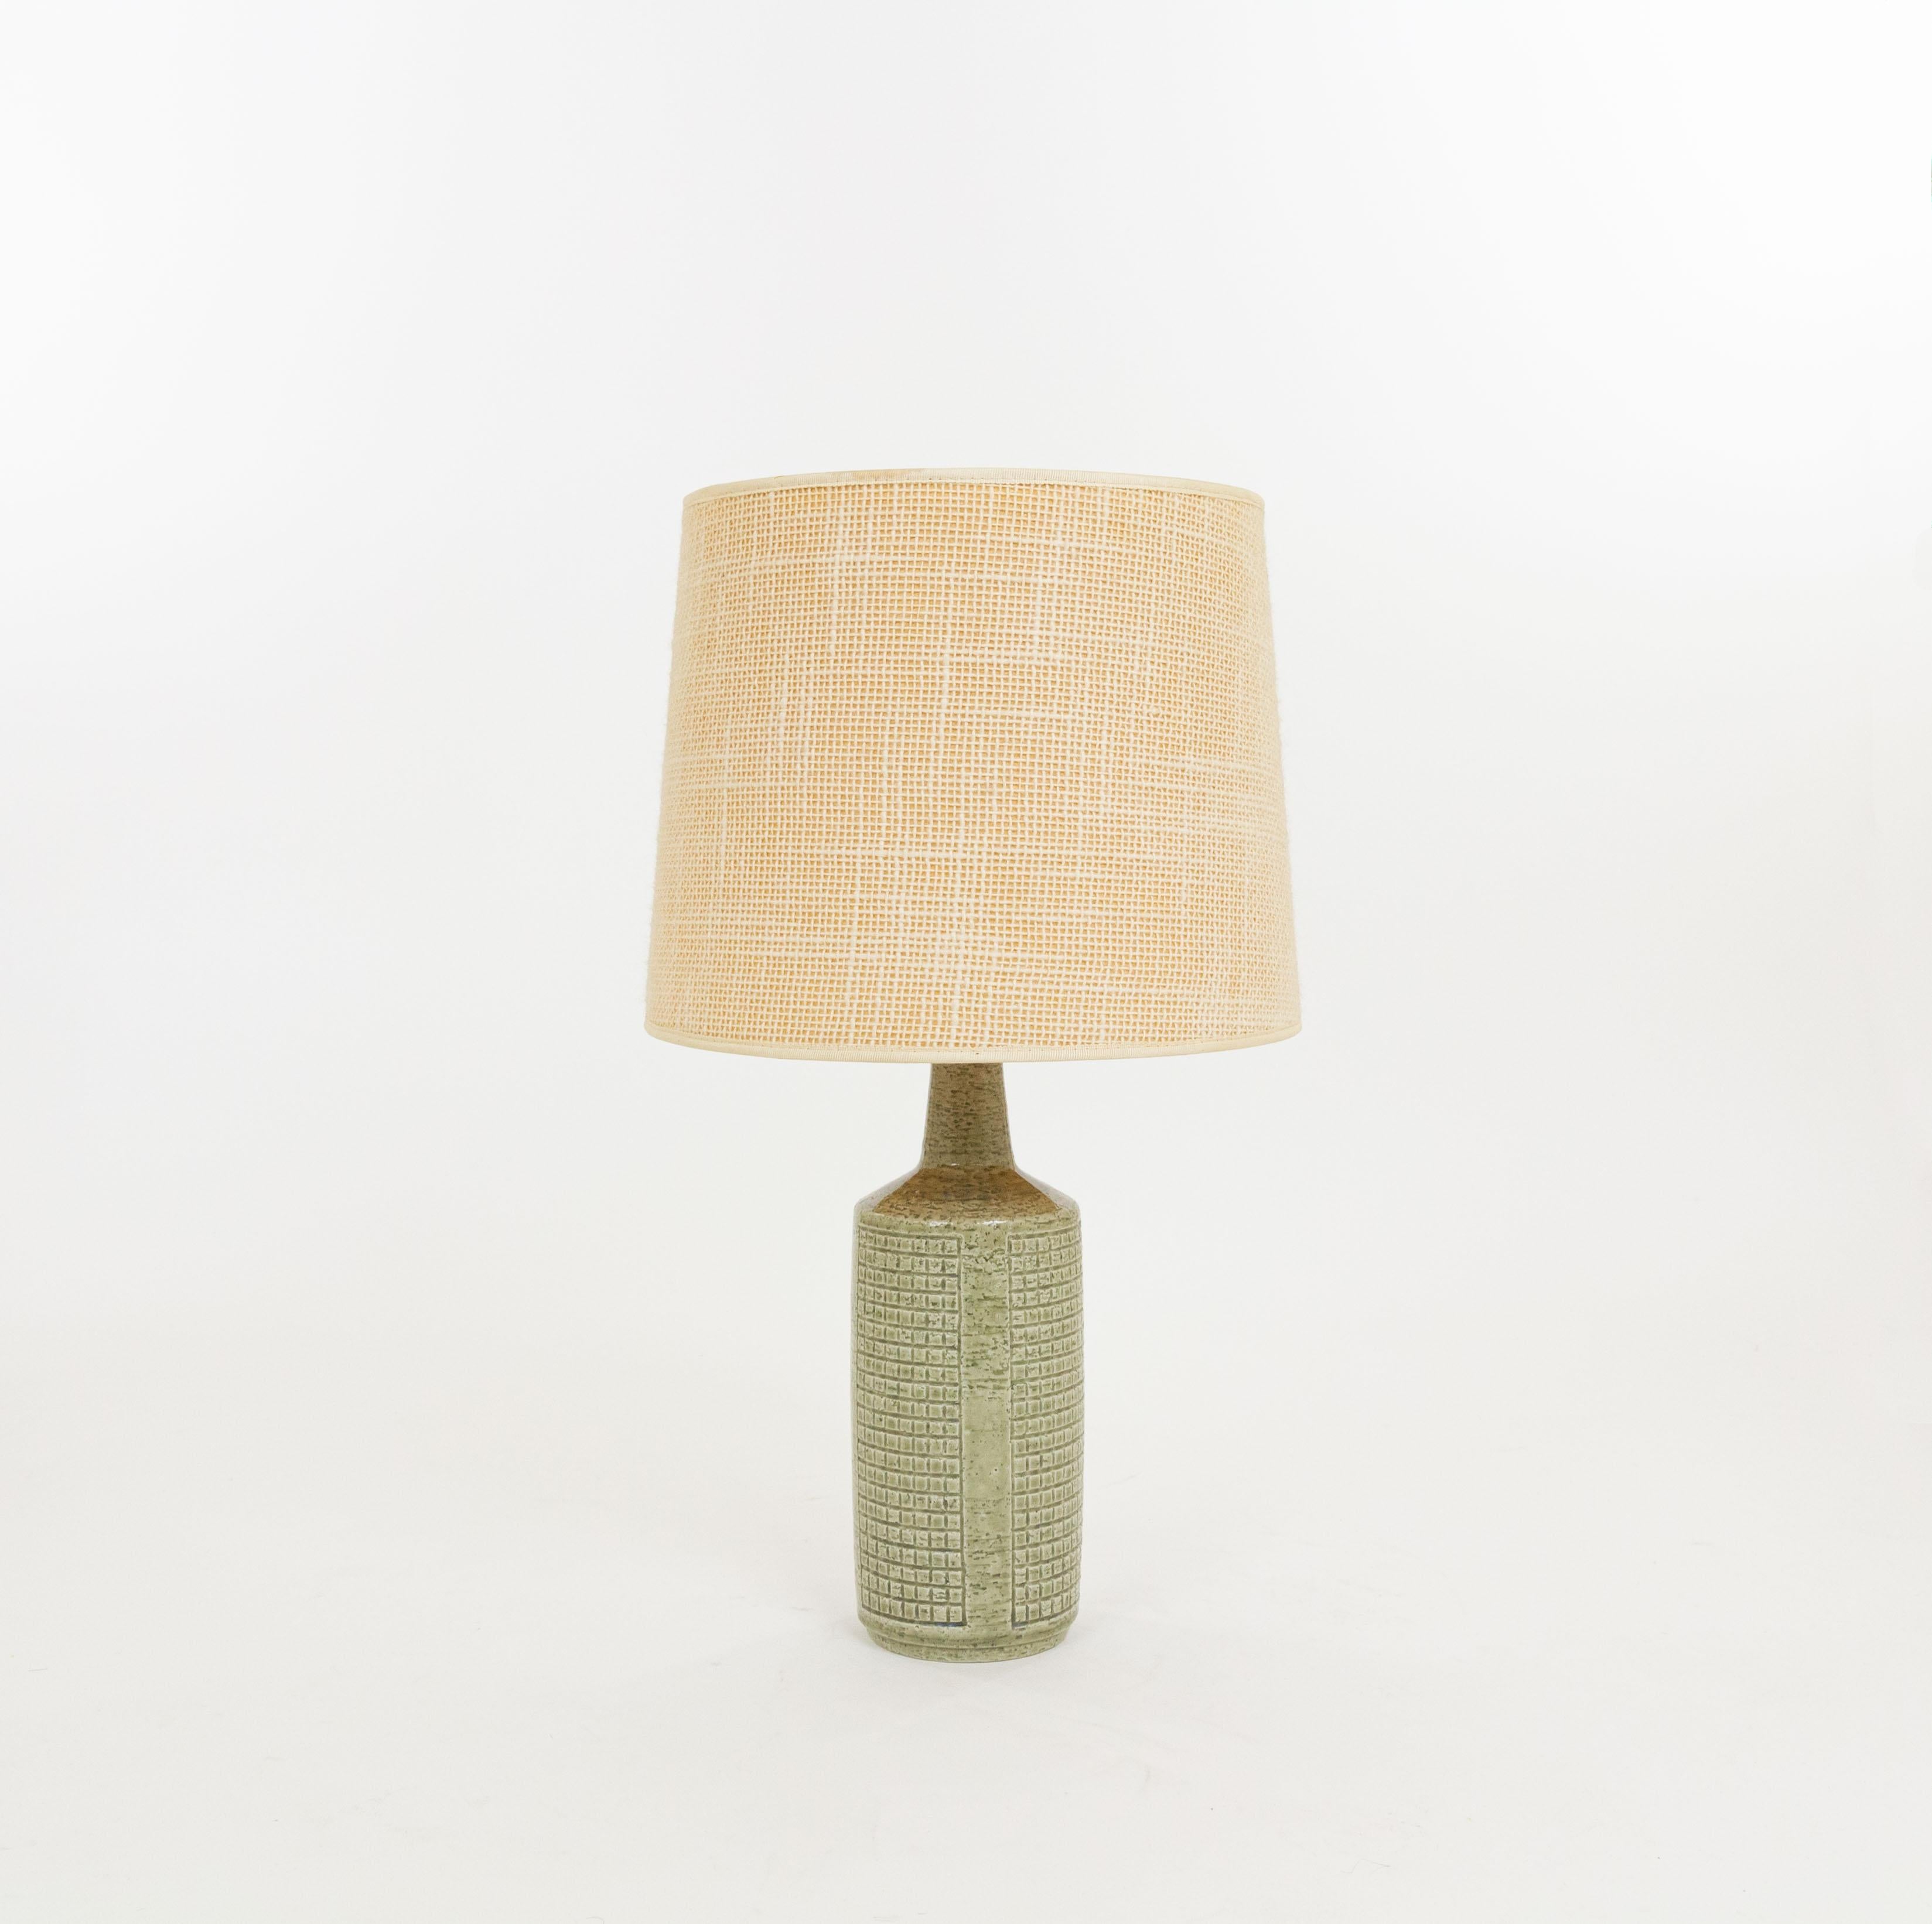 Lampe de table modèle DL/30 réalisée par Annelise et Per Linnemann-Schmidt pour Palshus dans les années 1960. La couleur de la base décorée à la main est vert grain. Il présente des motifs géométriques impressionnés.

La lampe est livrée avec son